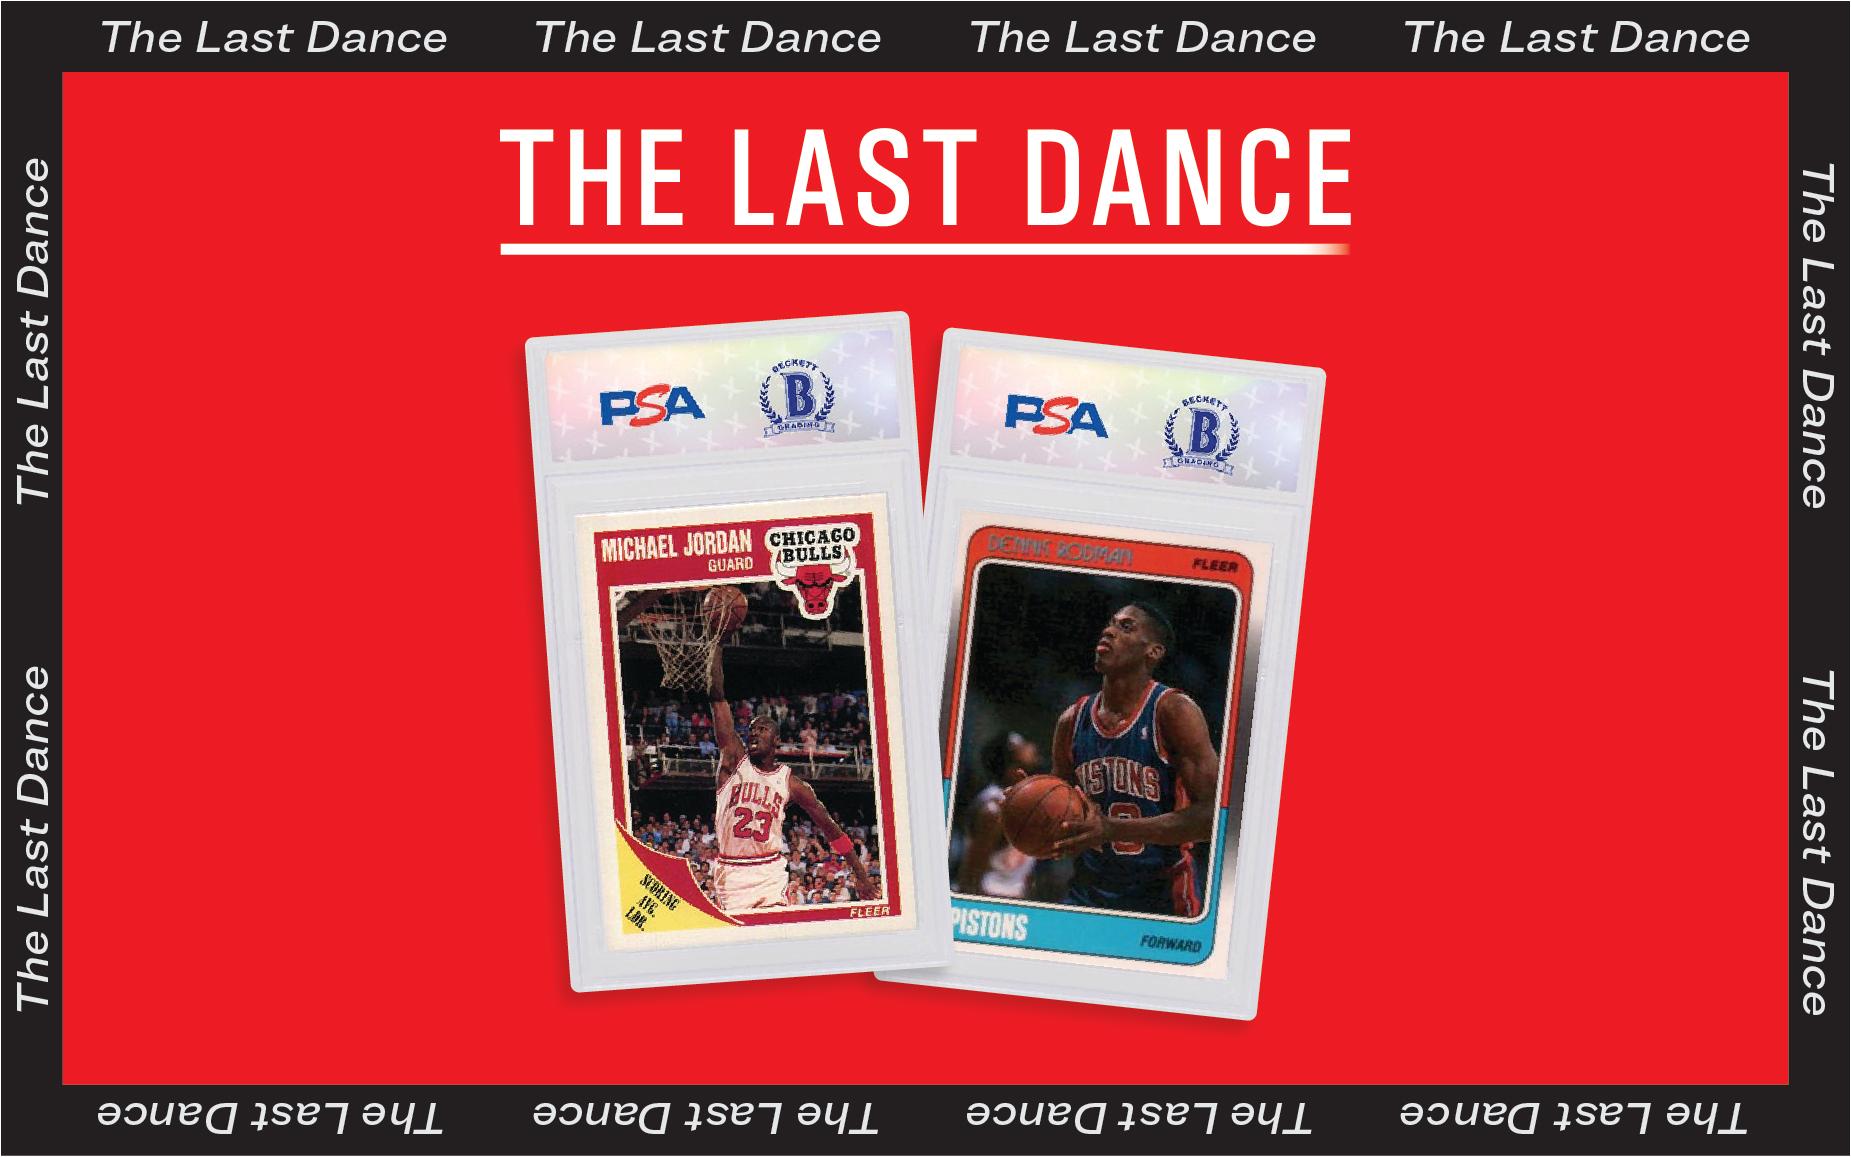 The Last Dance: Jordan and Rodman's Fleer